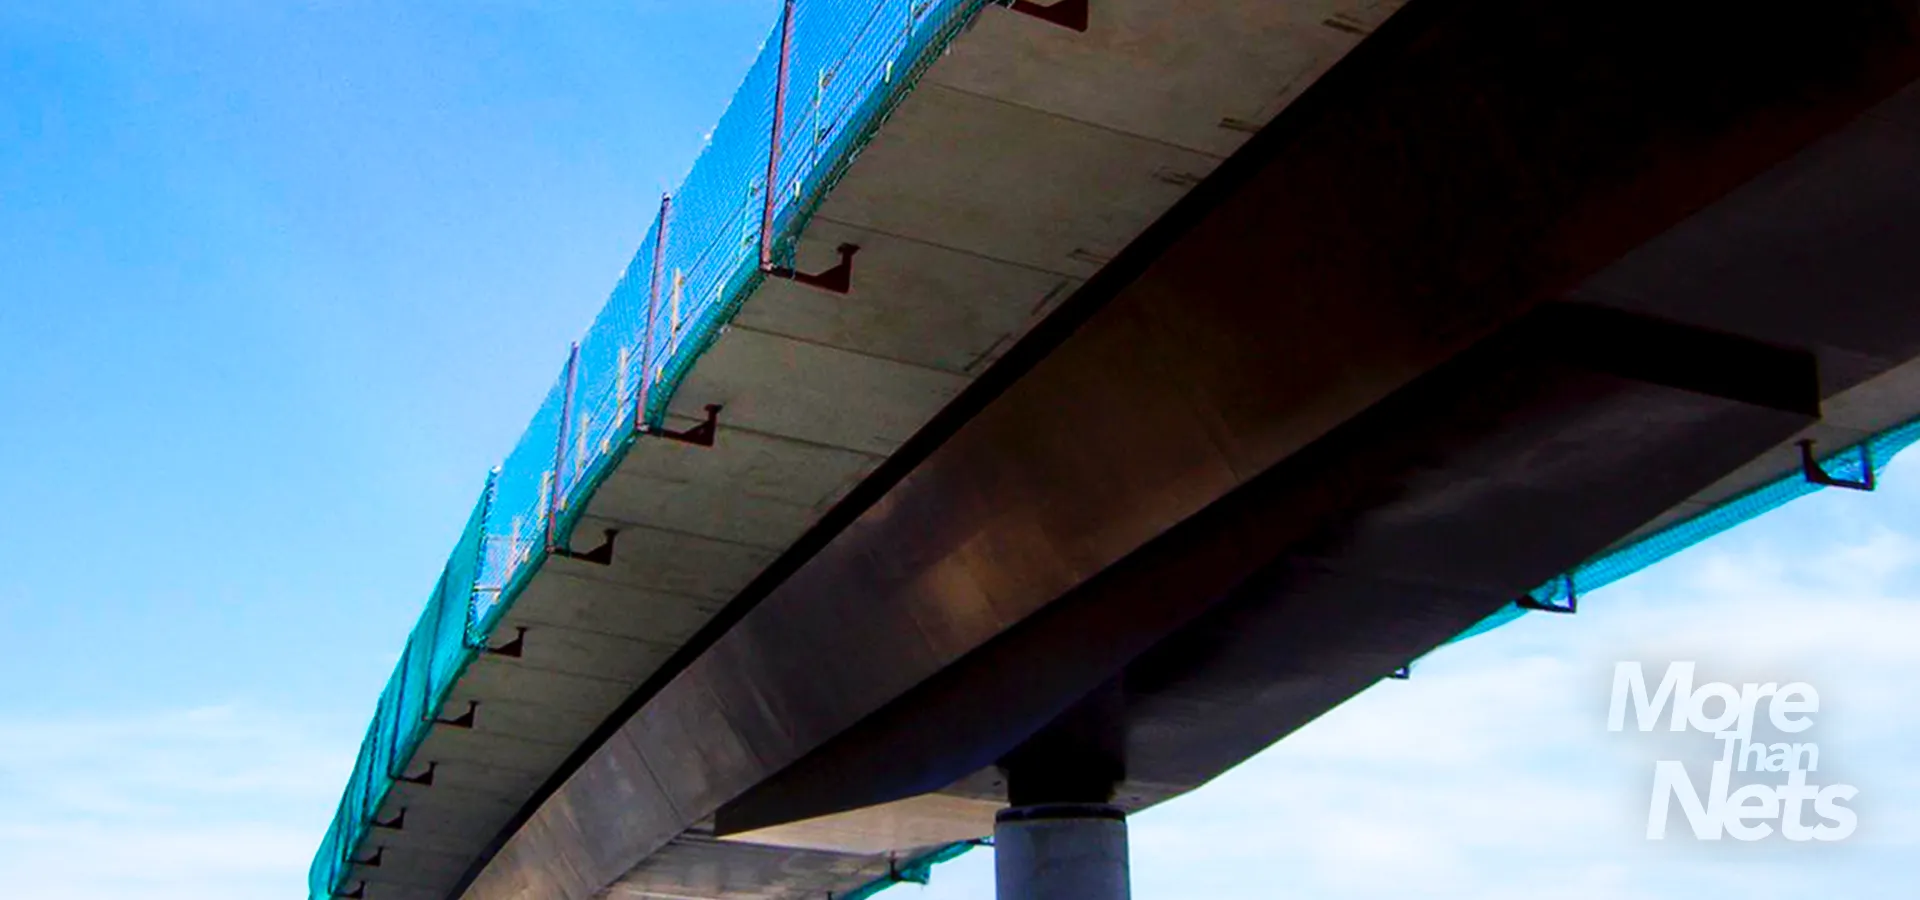 Redes de seguridad instalaciones especiales en puentes y viaductos - VISORNETS - Visor Fall Arrest Nets